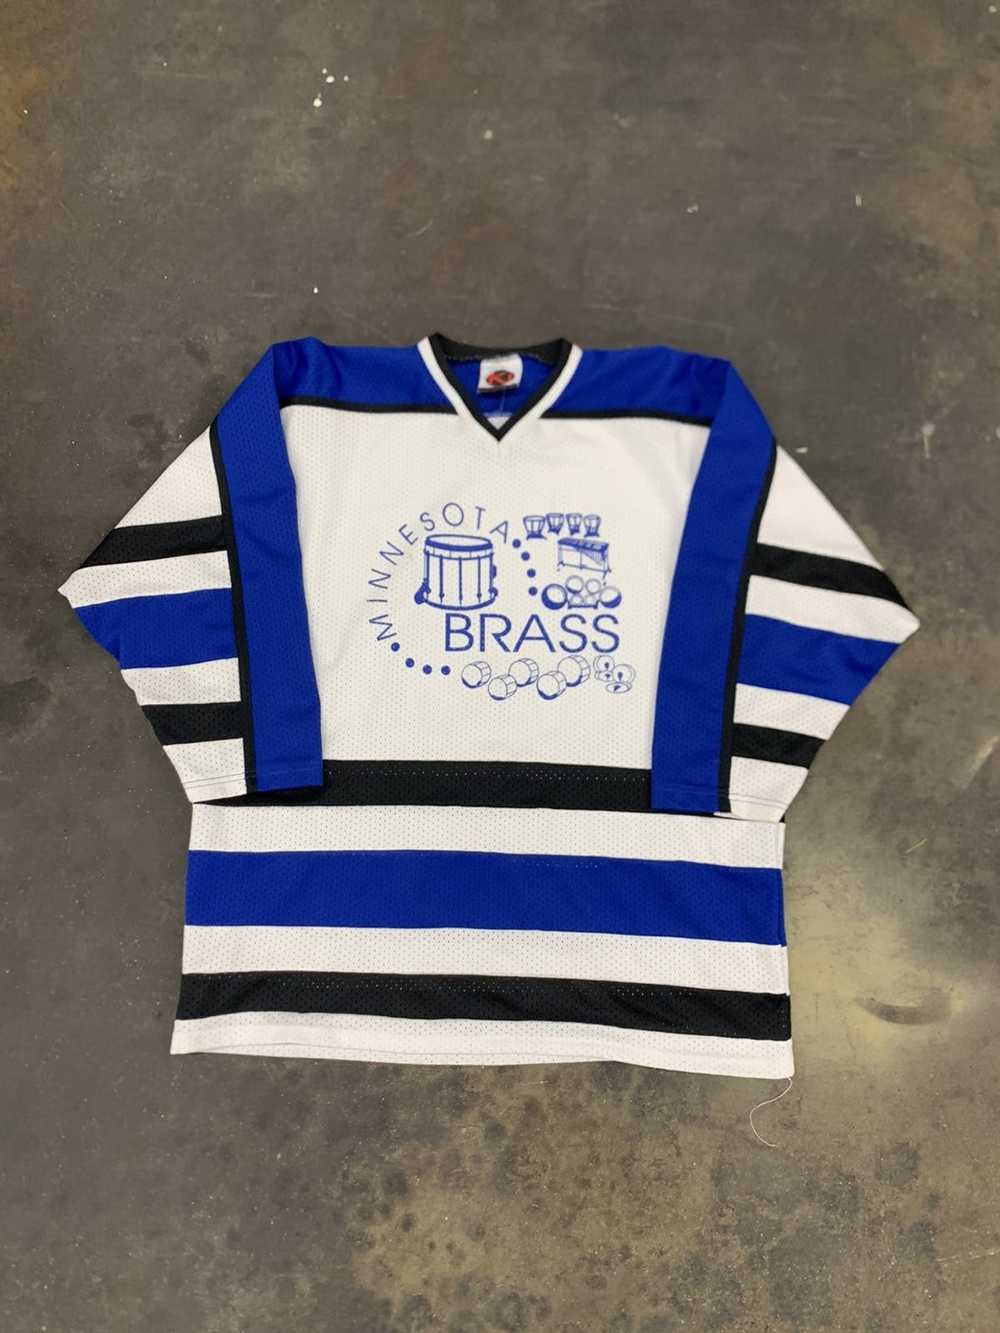 Vintage Vintage Minnesota Brass Jersey - image 2